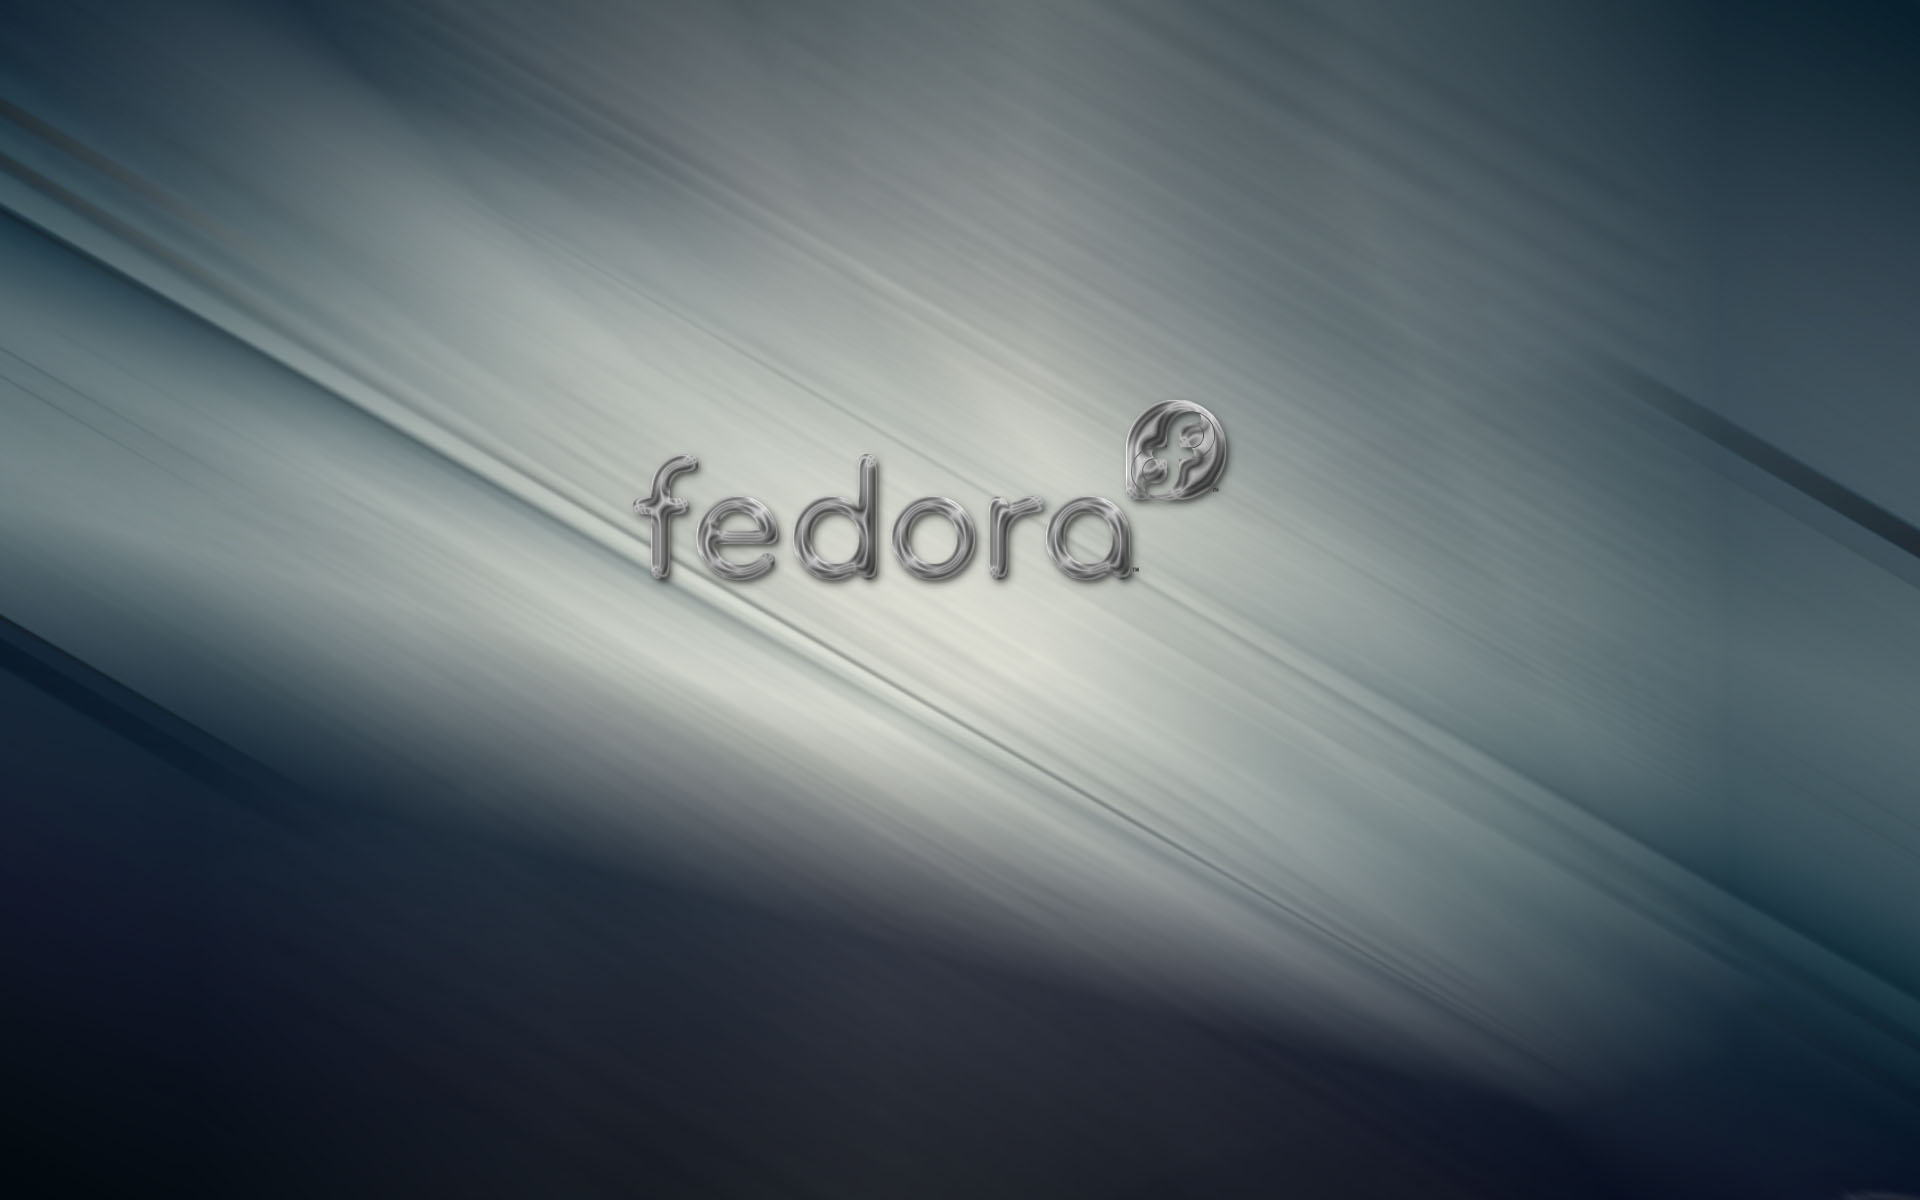 Fedora Linux Wallpaper Widescreen Jpg